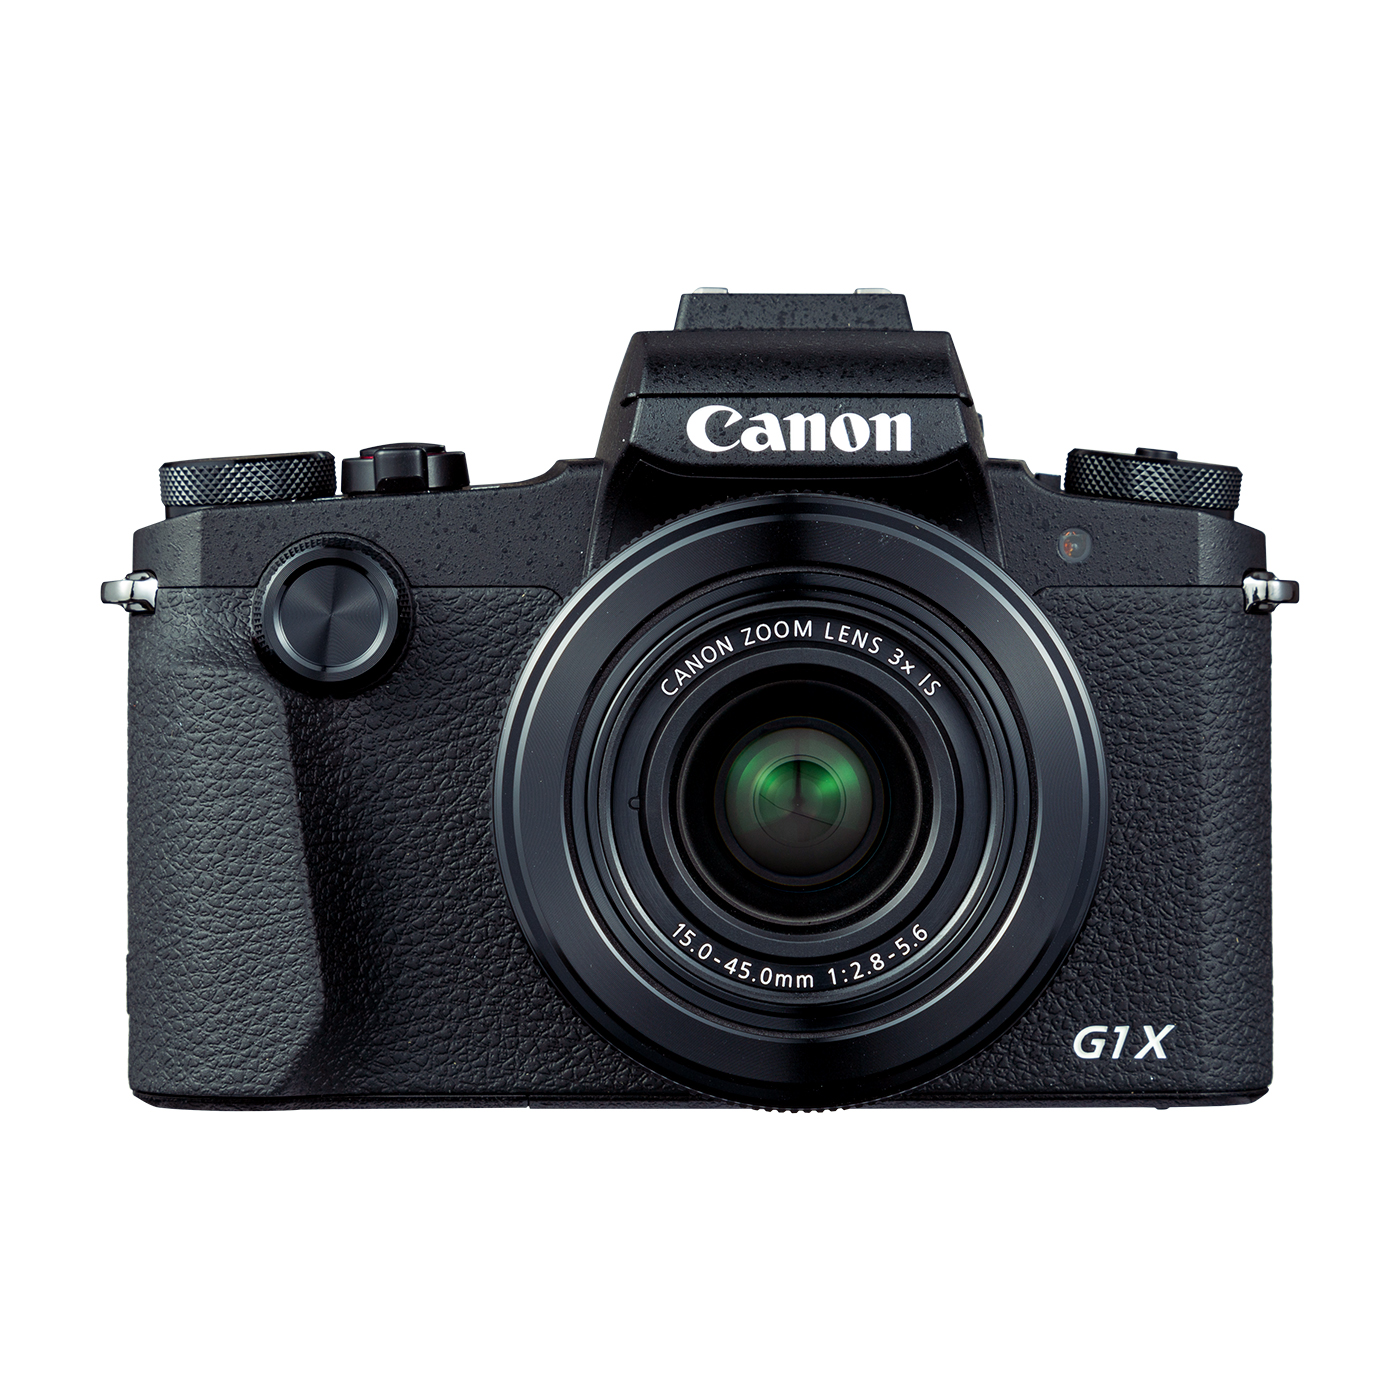 キヤノン Canon PowerShot G1X MarkIII コンパクトデジタルカメラ キャノン ジャンク Y8980304